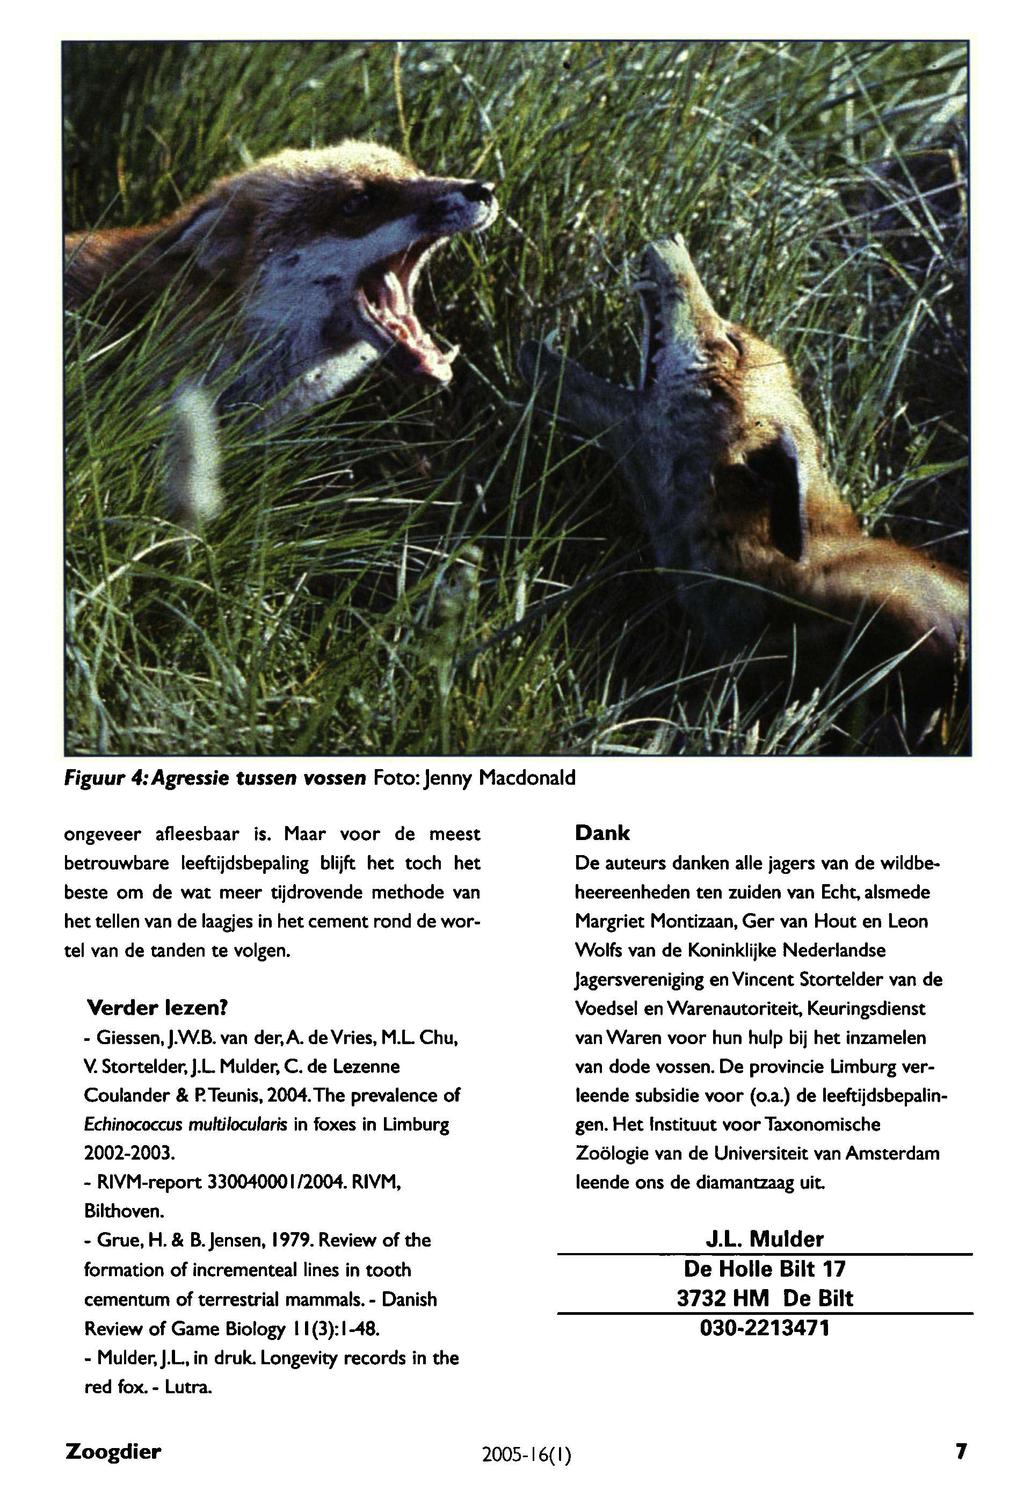 Giessen, Grue, Mulder, Figuur 4: Agressie tussen vossen Foto: Jenny Macdonald ongeveer afleesbaar is.